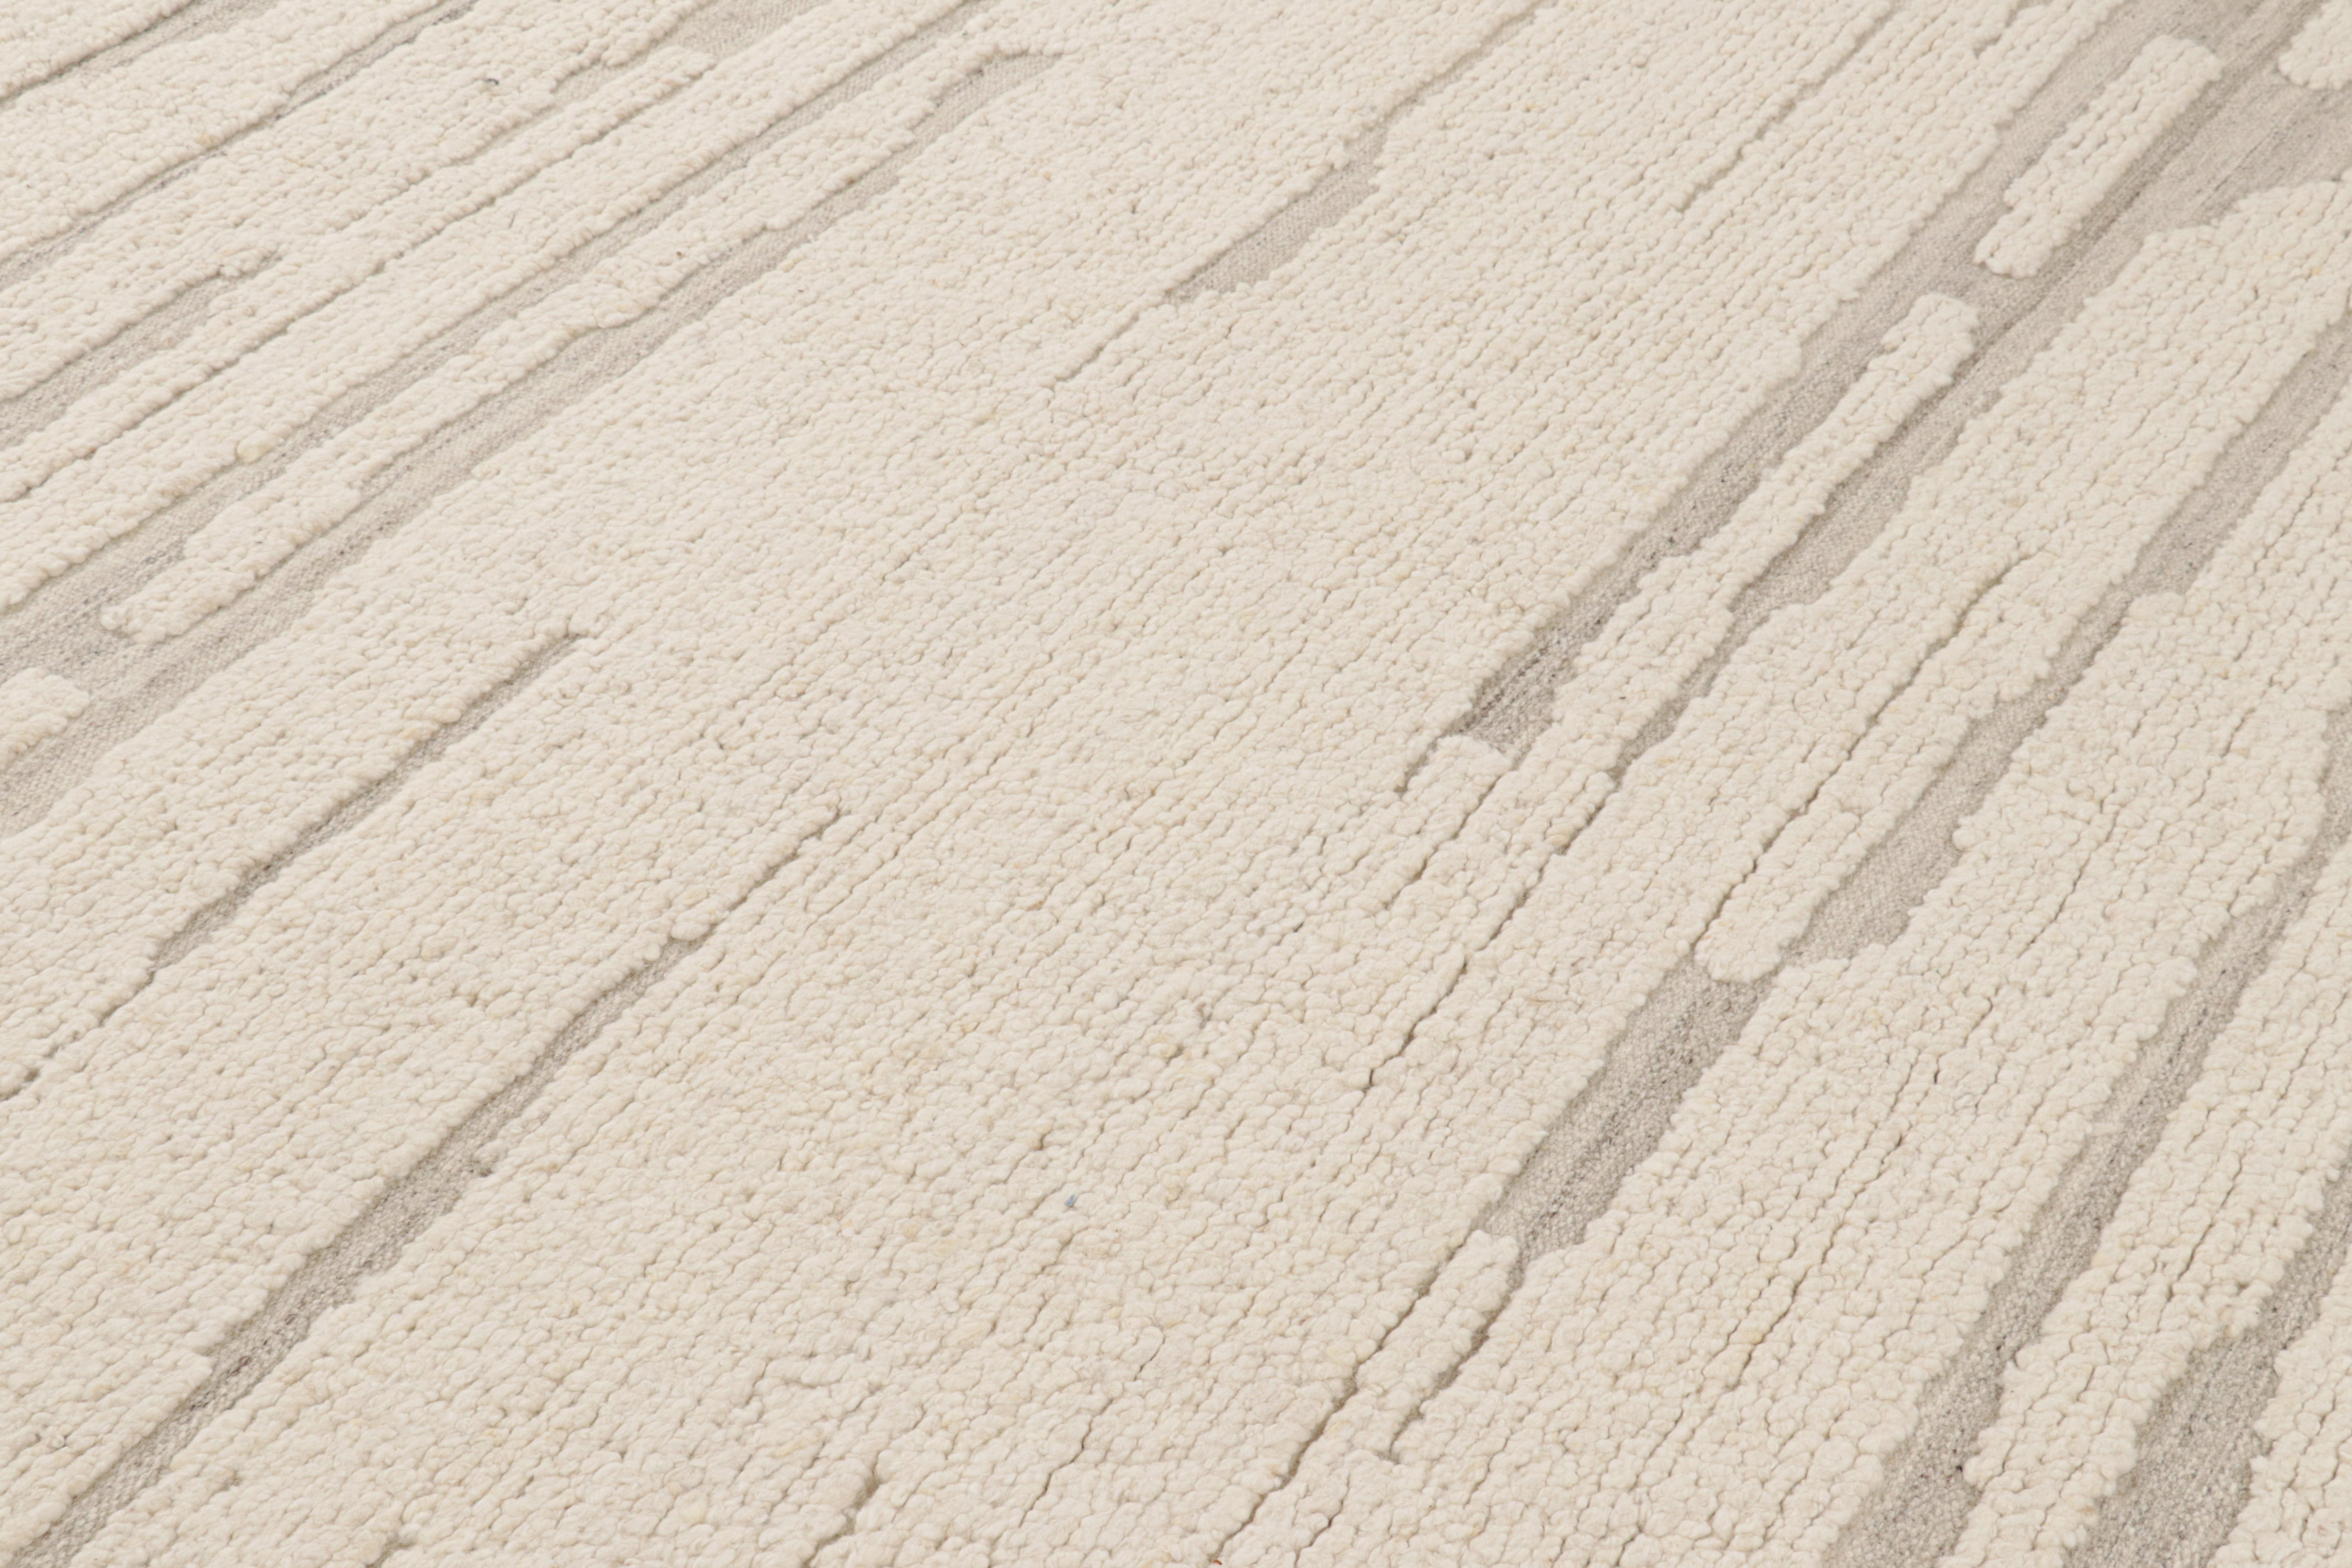 Dieser handgewebte 8x10-Kilim aus Wolle hat eine aufregende neue boucle-ähnliche Textur und stammt aus einer innovativen neuen zeitgenössischen Flachgewebe-Kollektion von Rug & Kilim'S Modern and Textural Rug Collections. 

Über das Design: 

Weiße